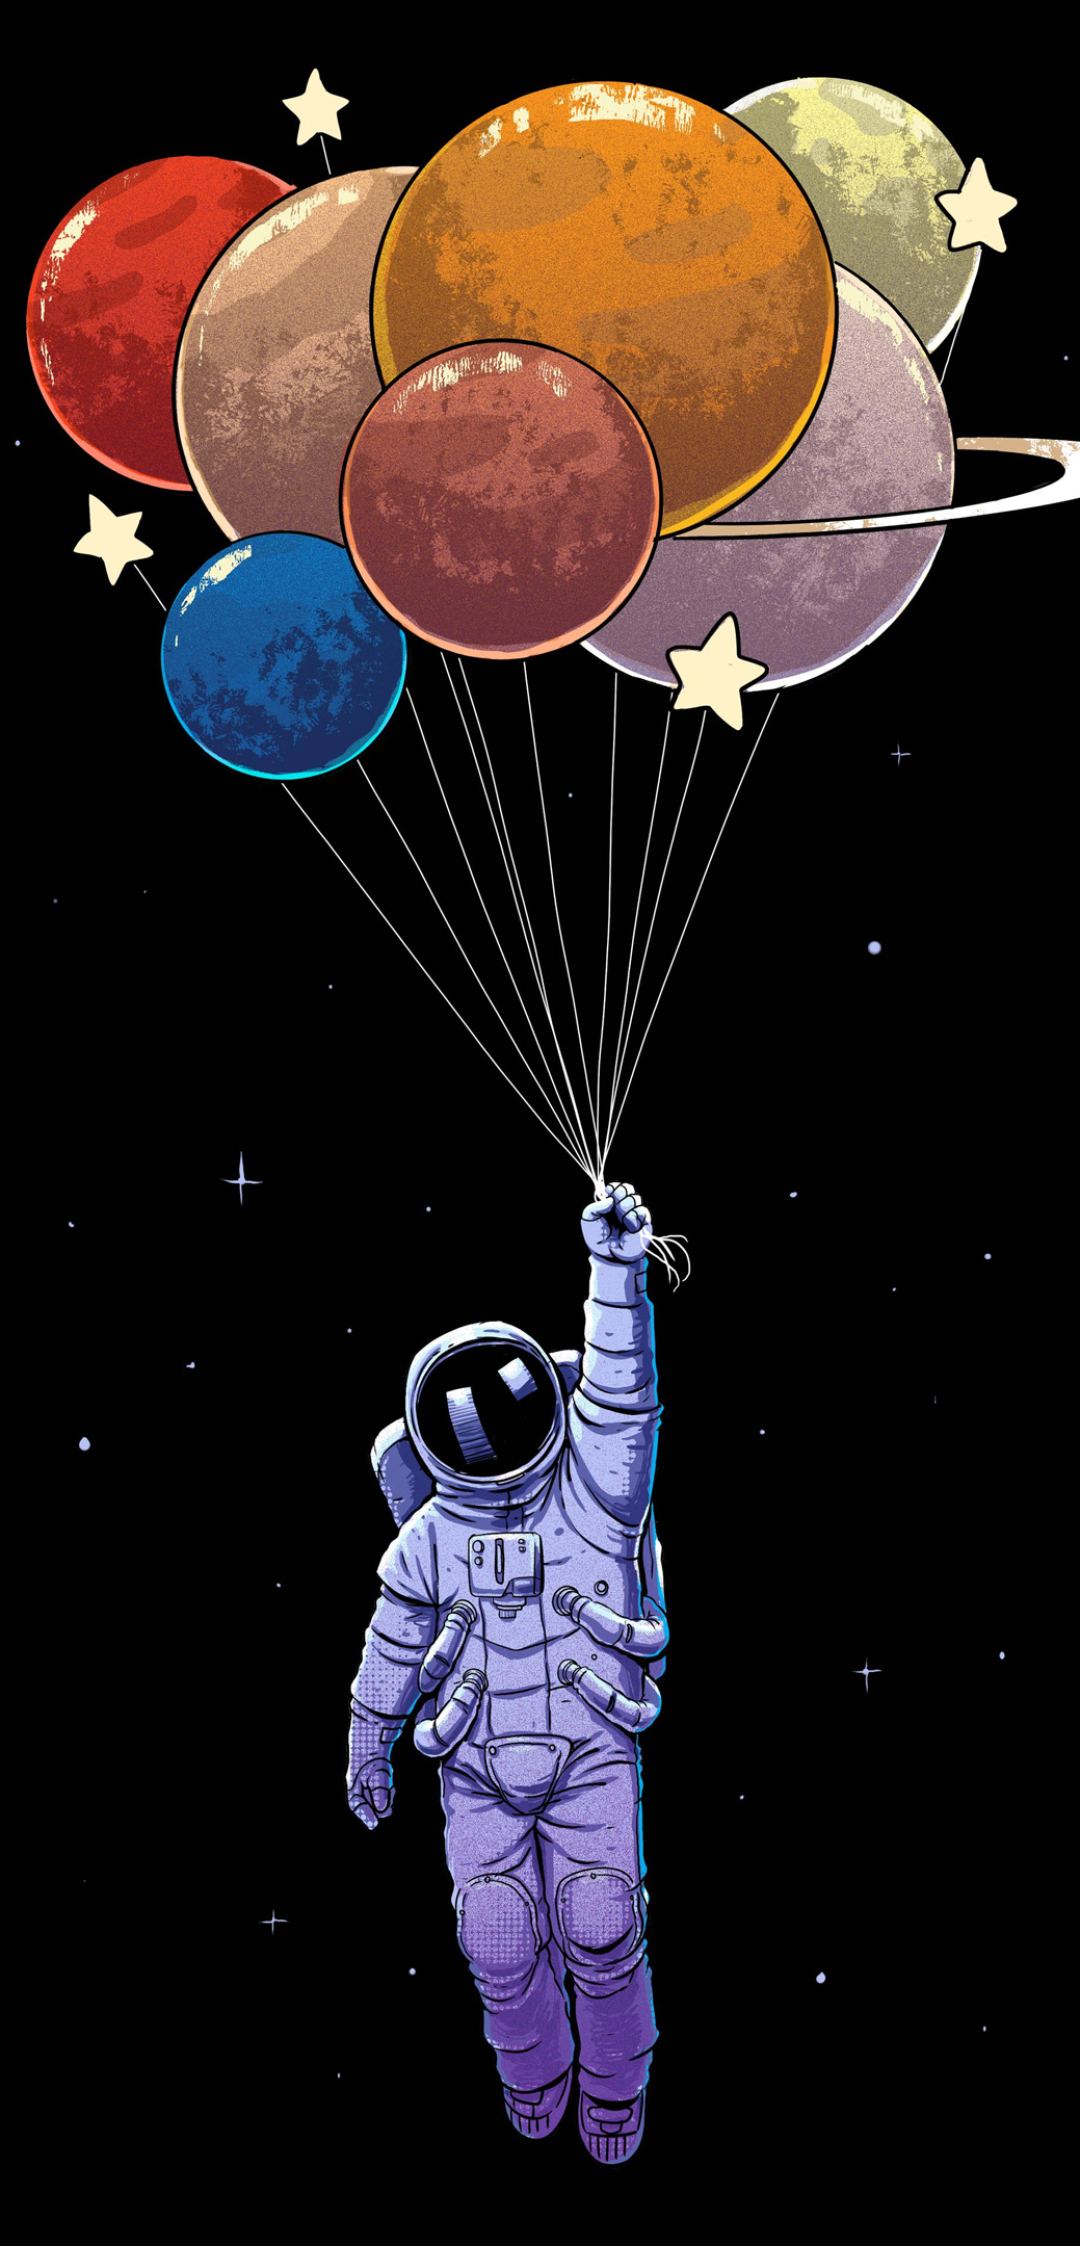 1386728 免費下載壁紙 科幻, 宇航员, 宇航服, 气球 屏保和圖片